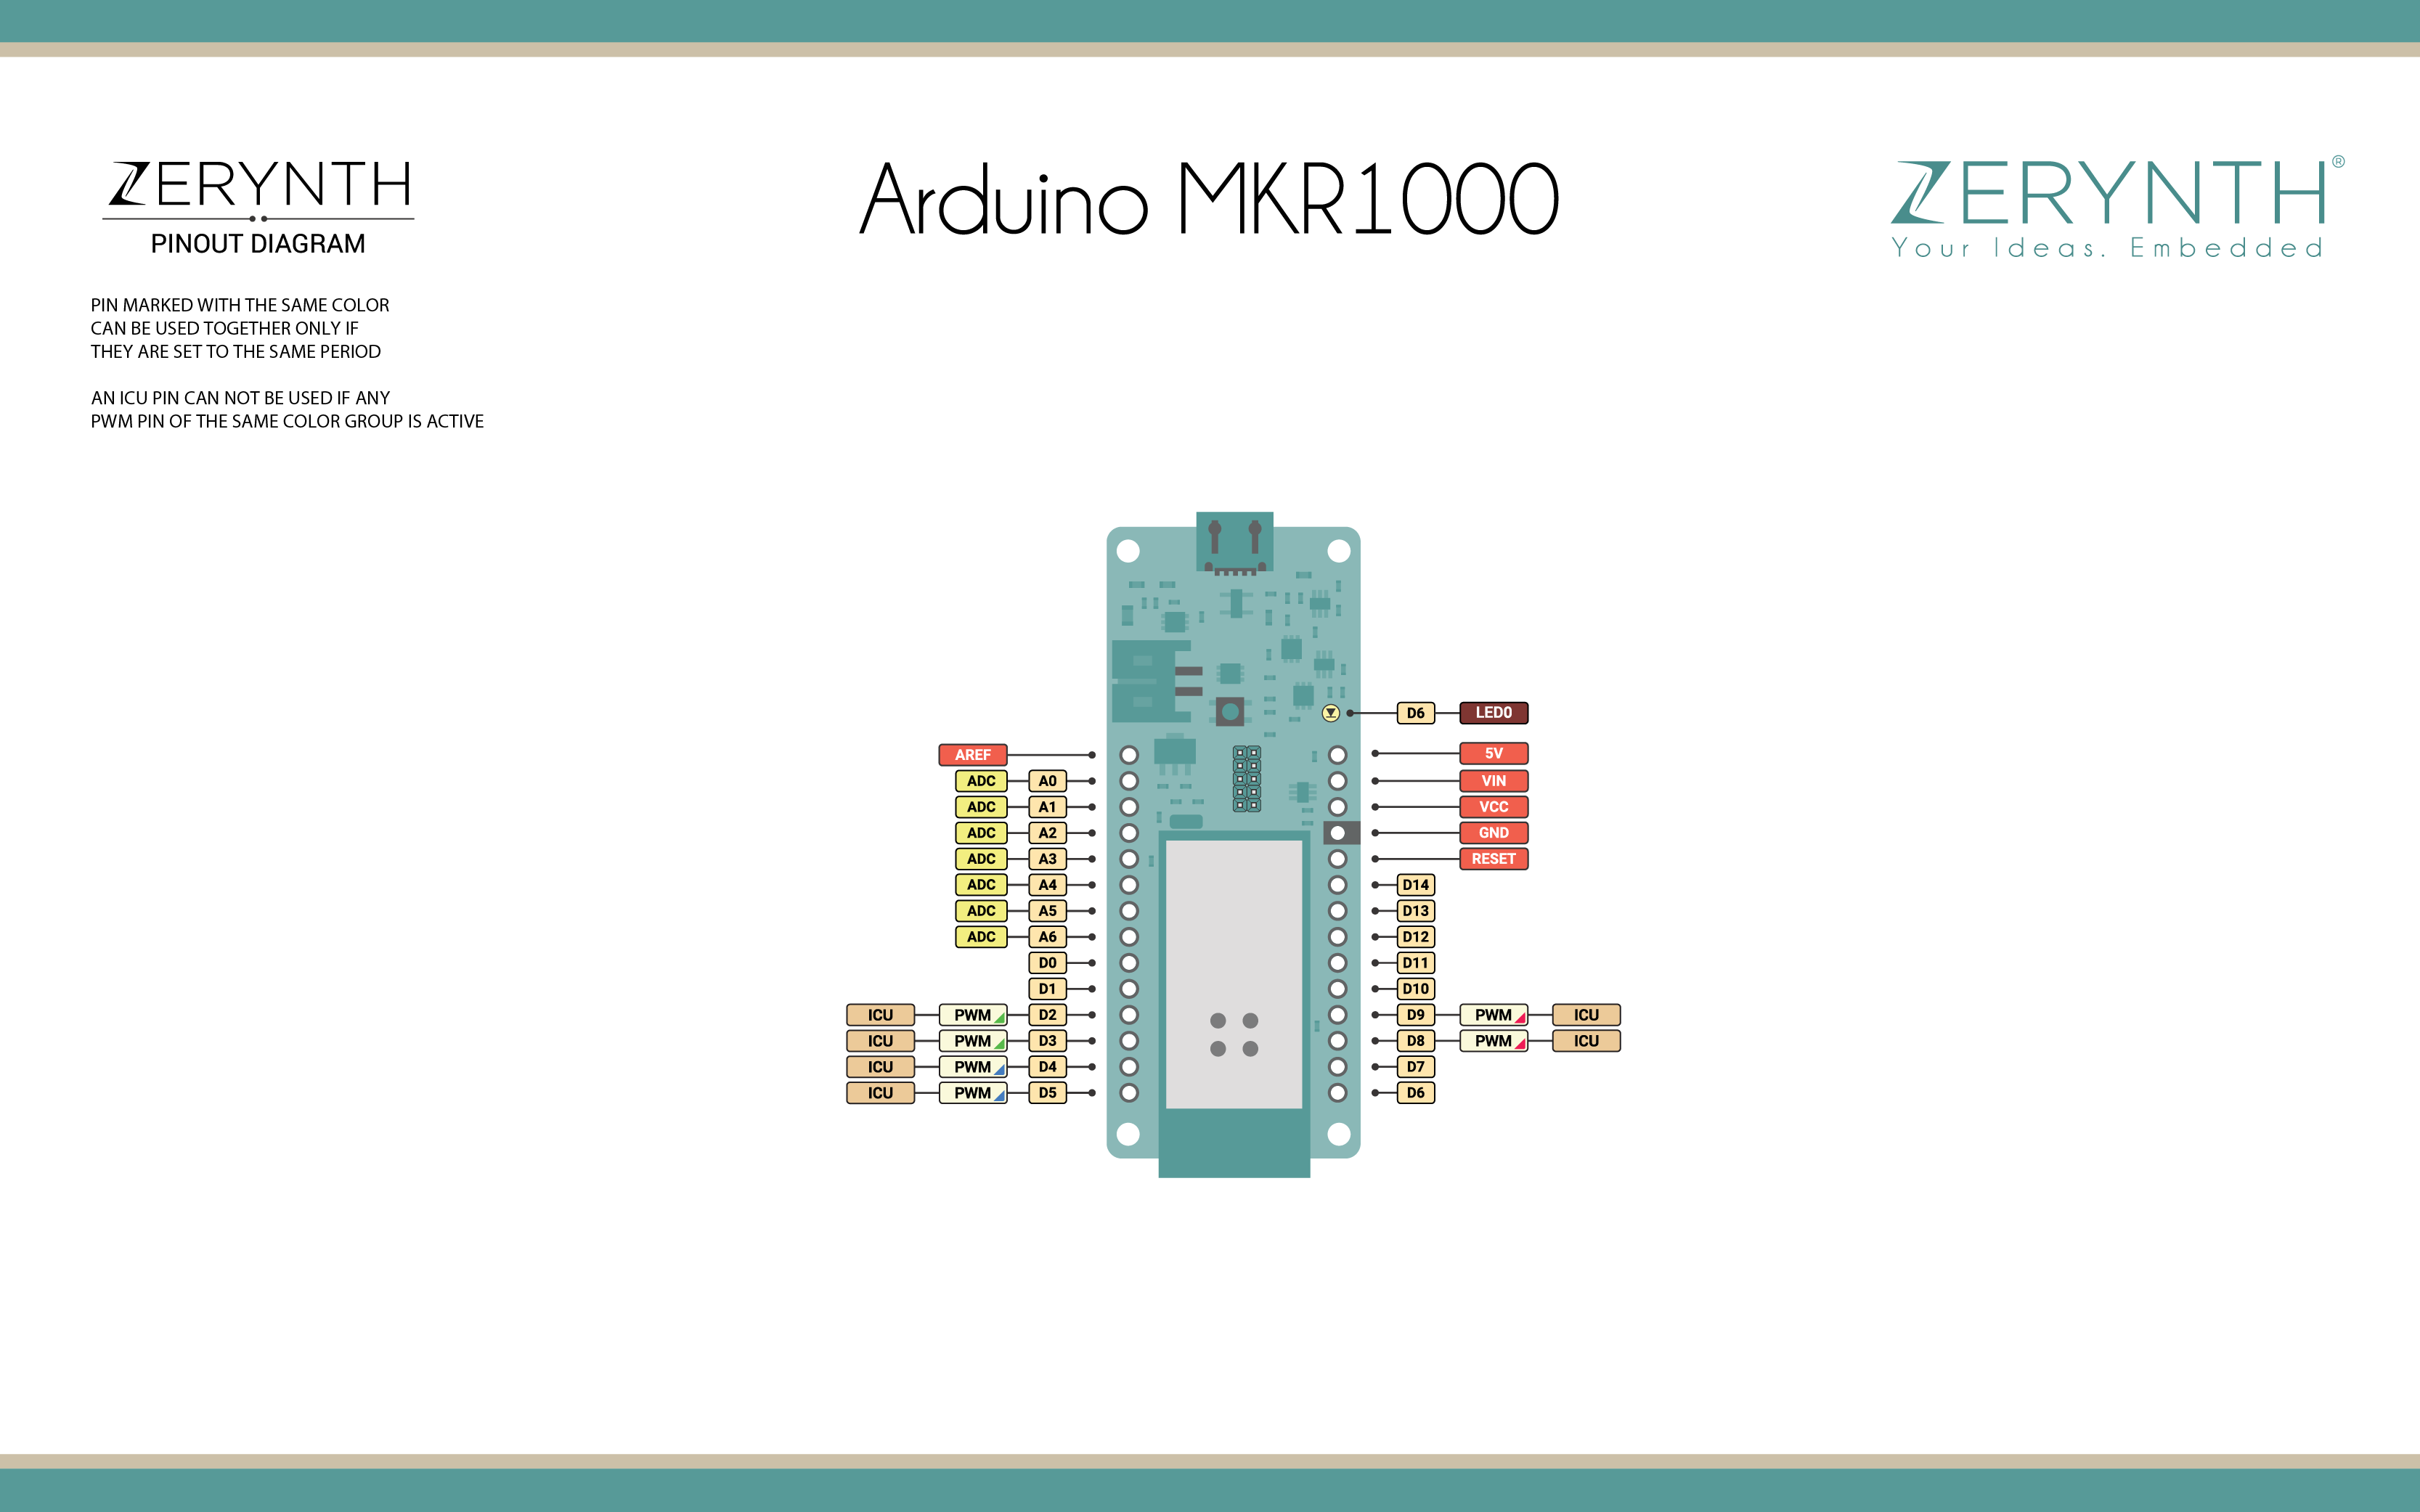 Arduino/Genuino MKR1000 Device